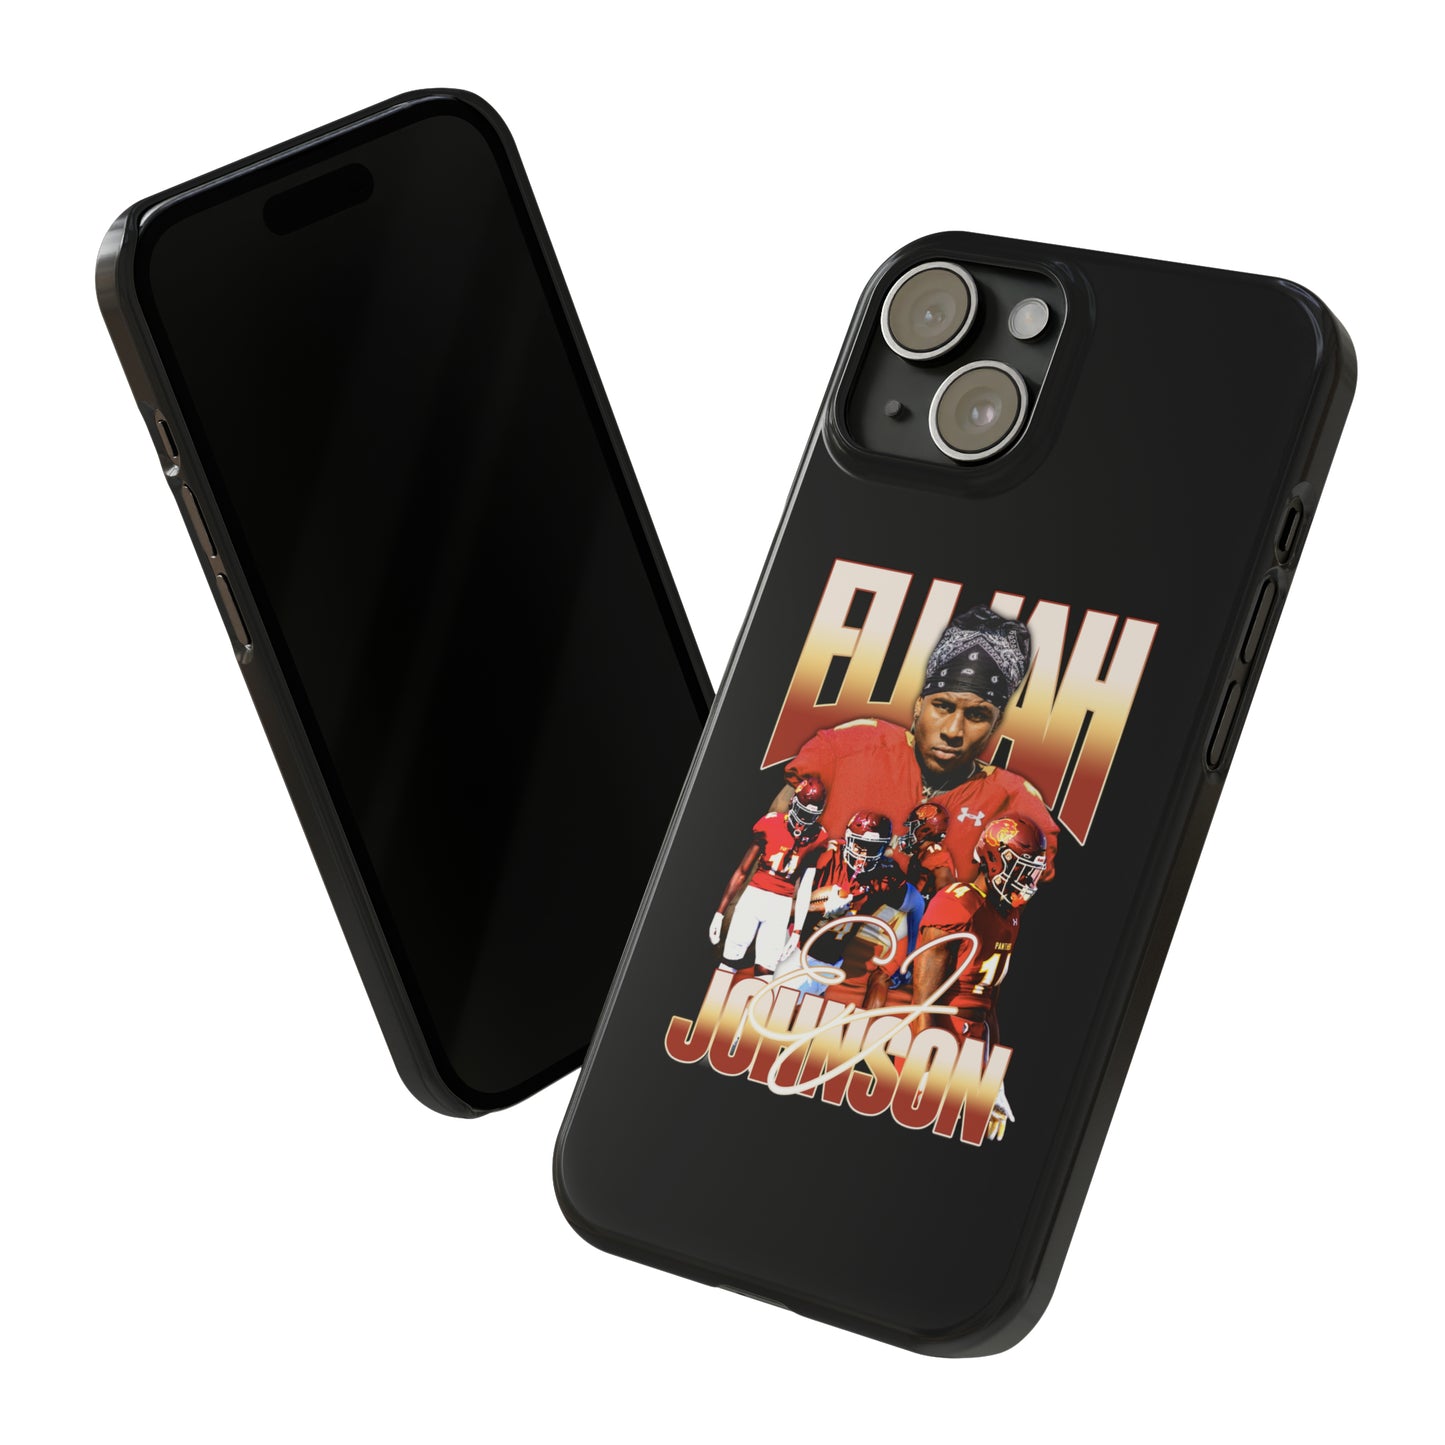 Elijah Johnson Slim Phone Cases